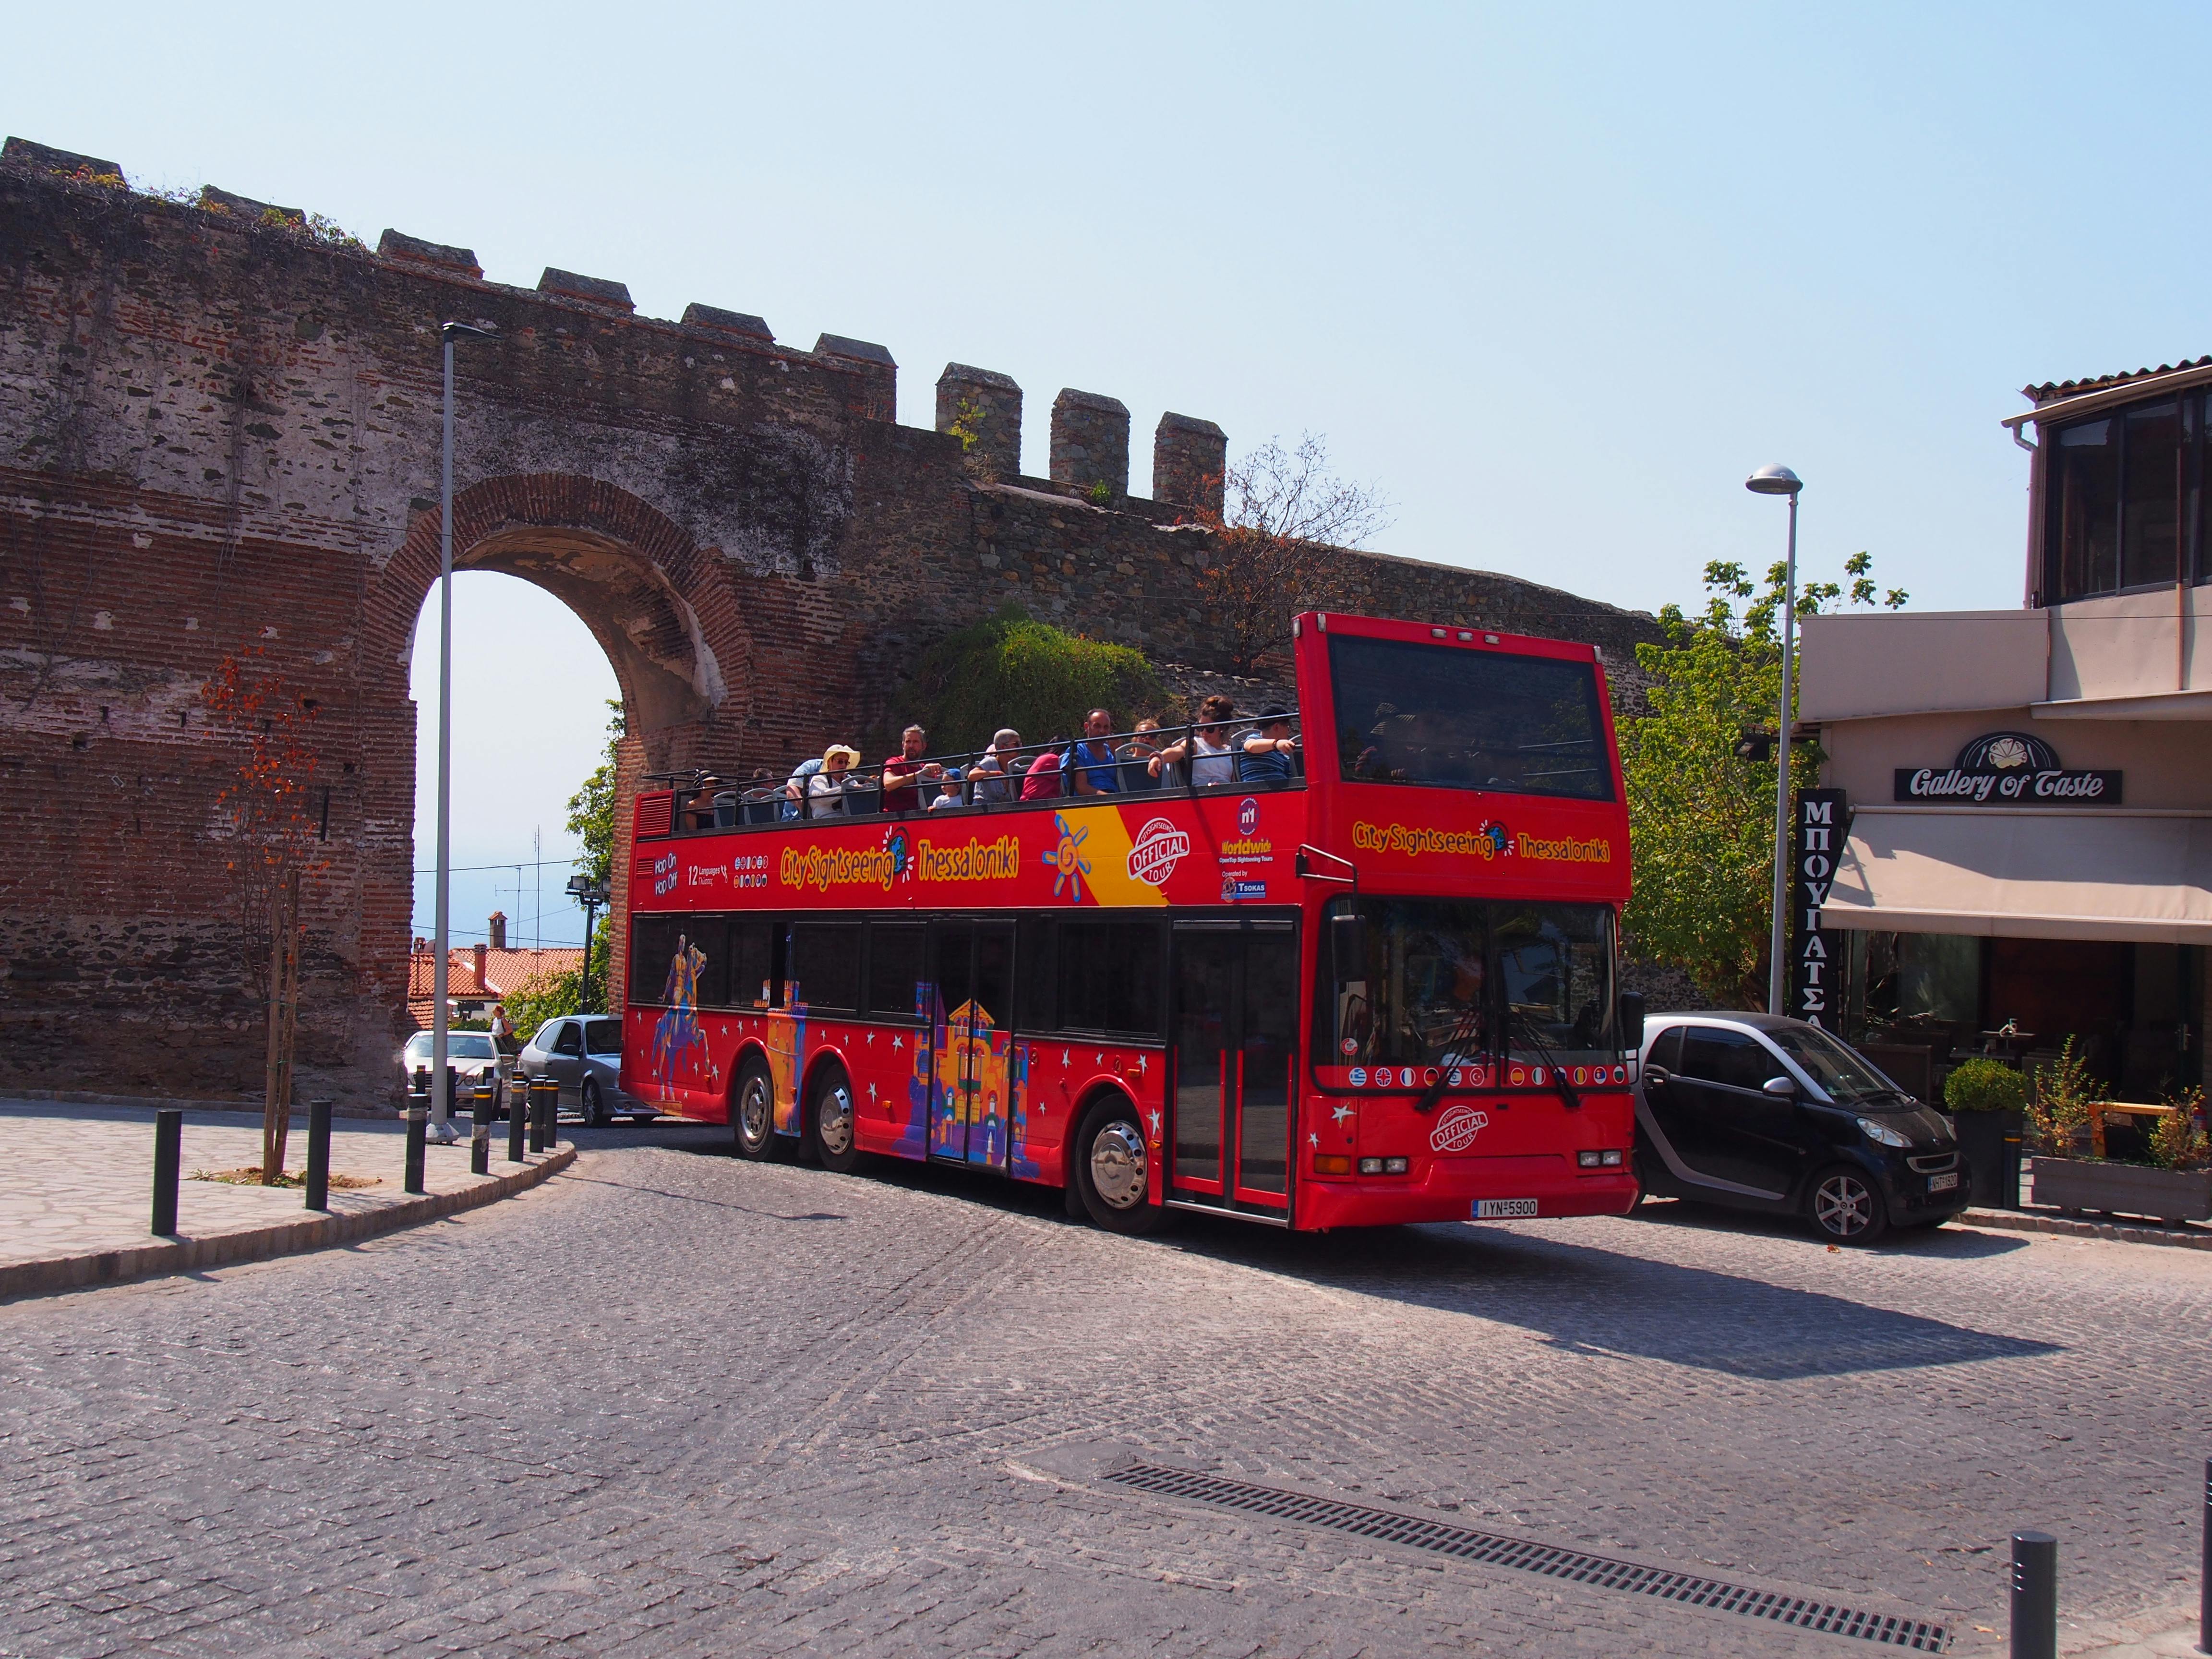 Excursão turística em ônibus panorâmico pela cidade de Thessaloniki